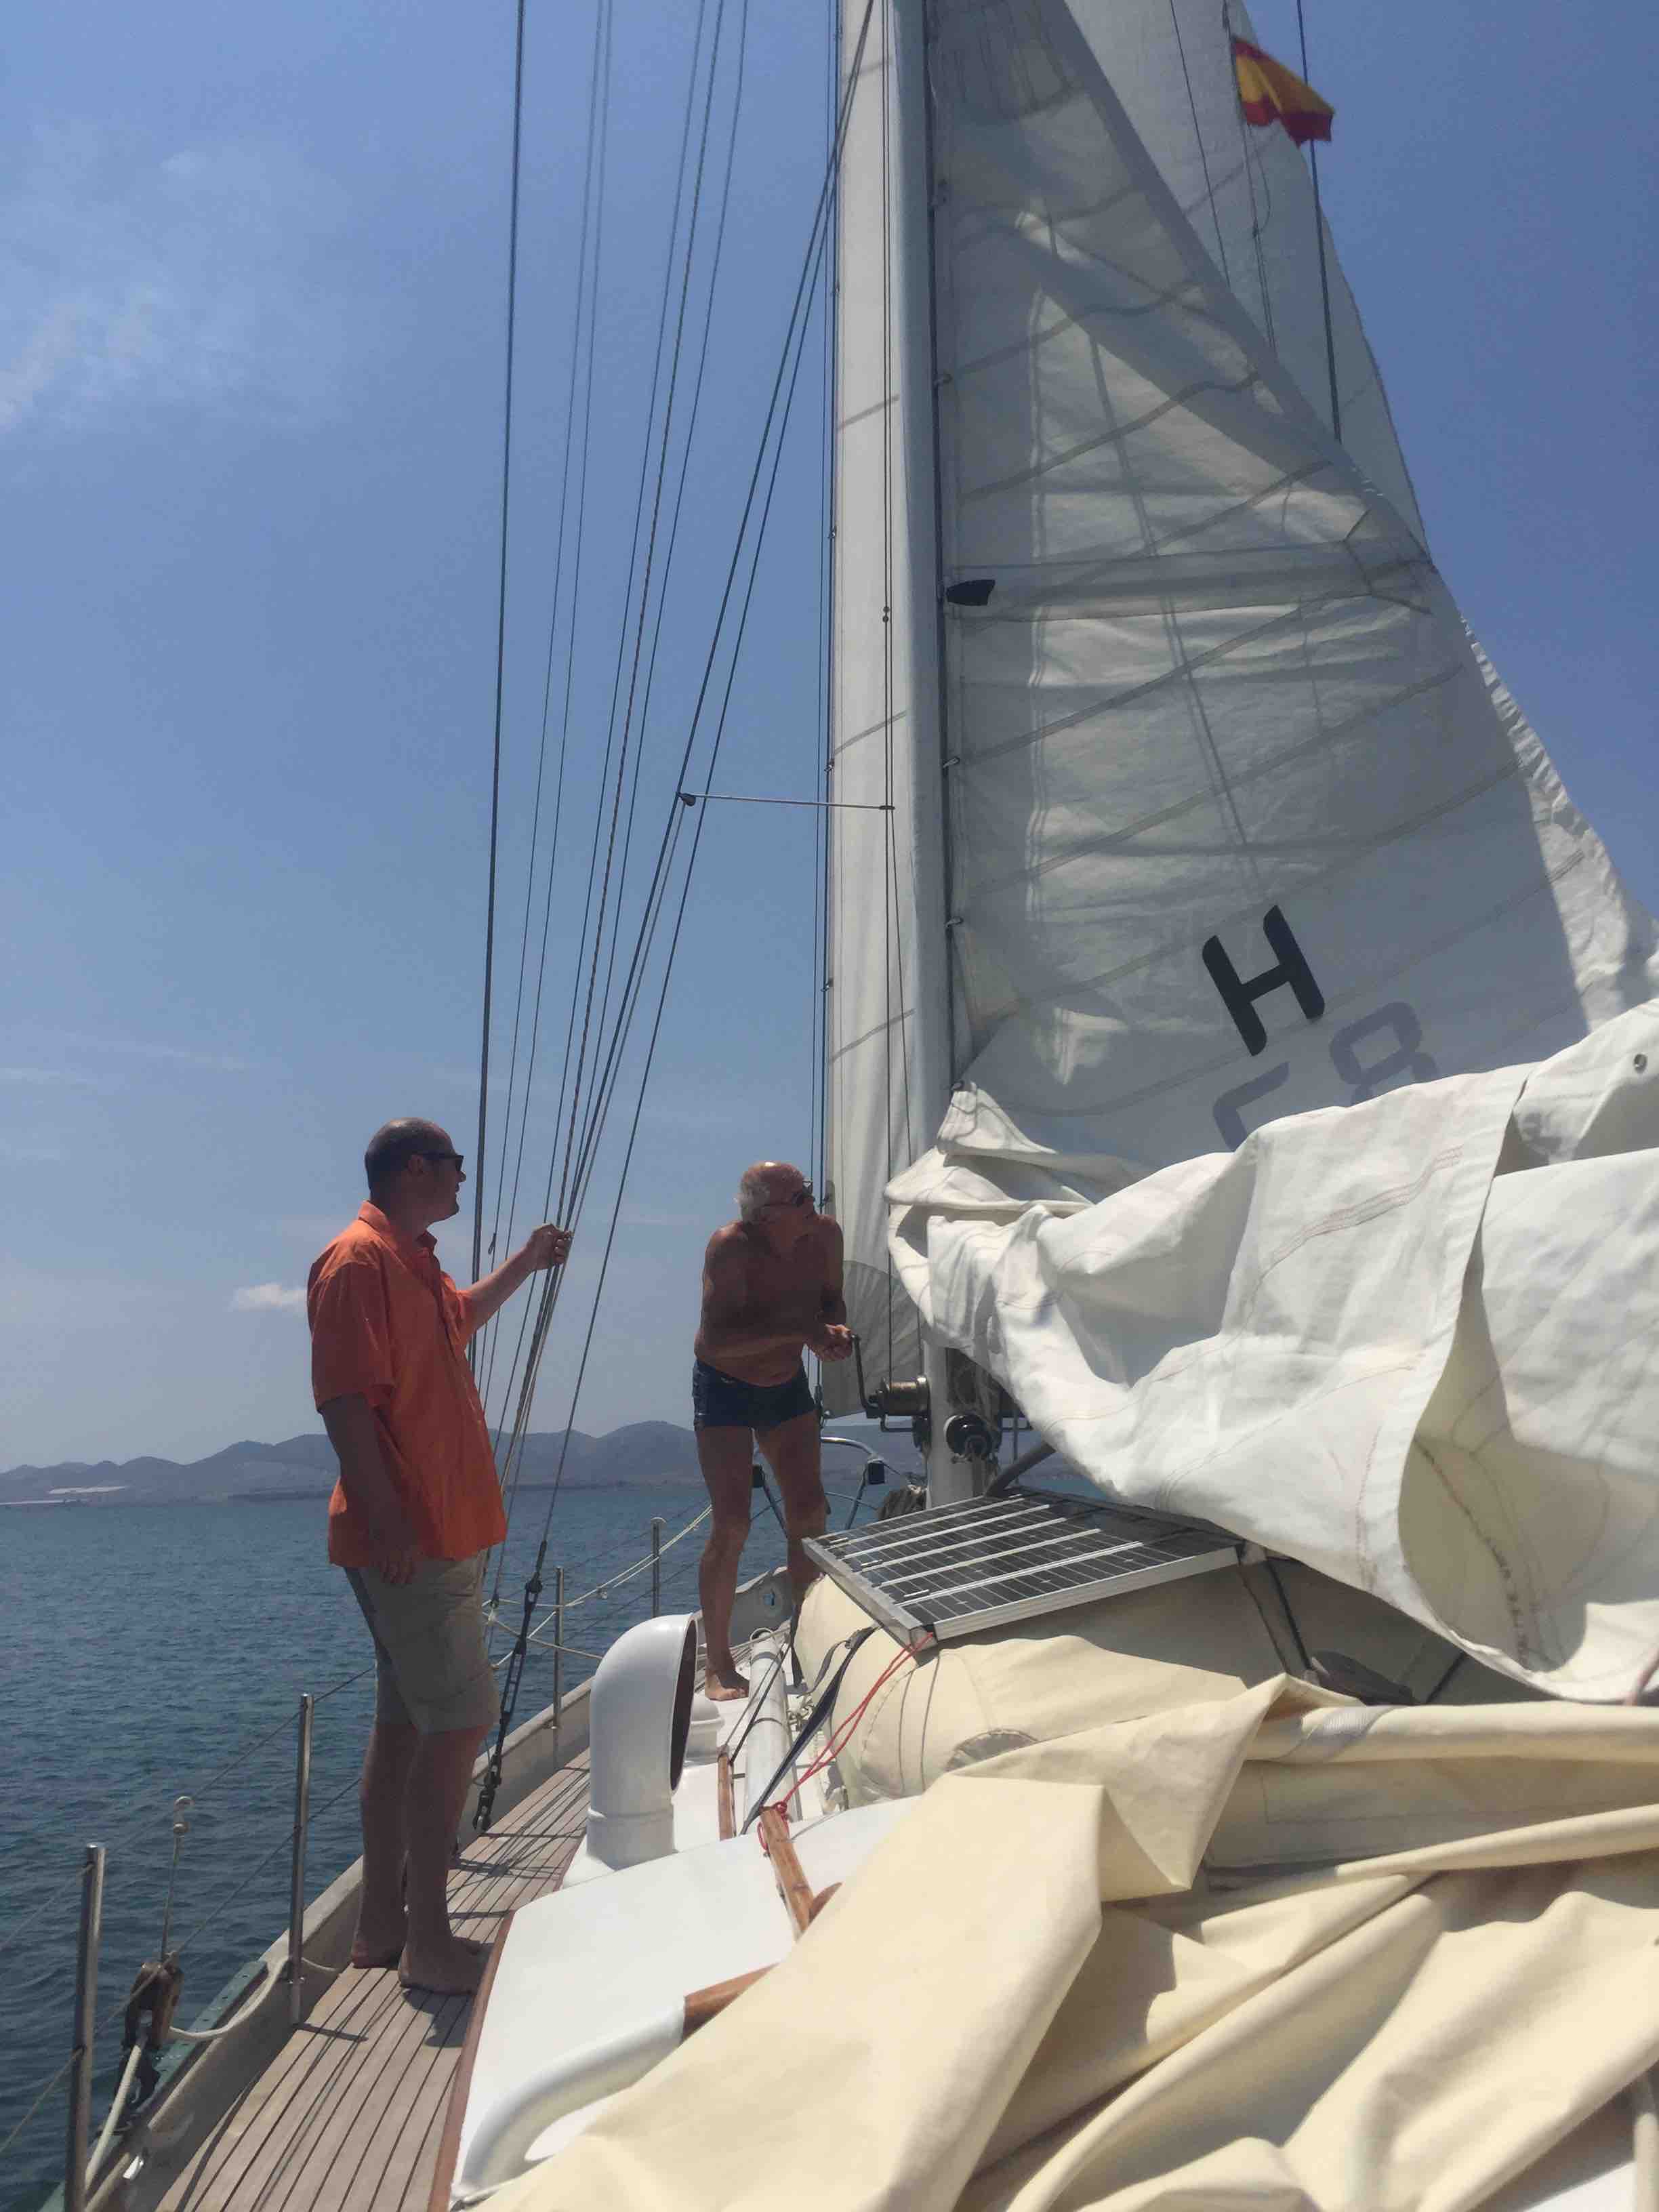 Hoisting the sail